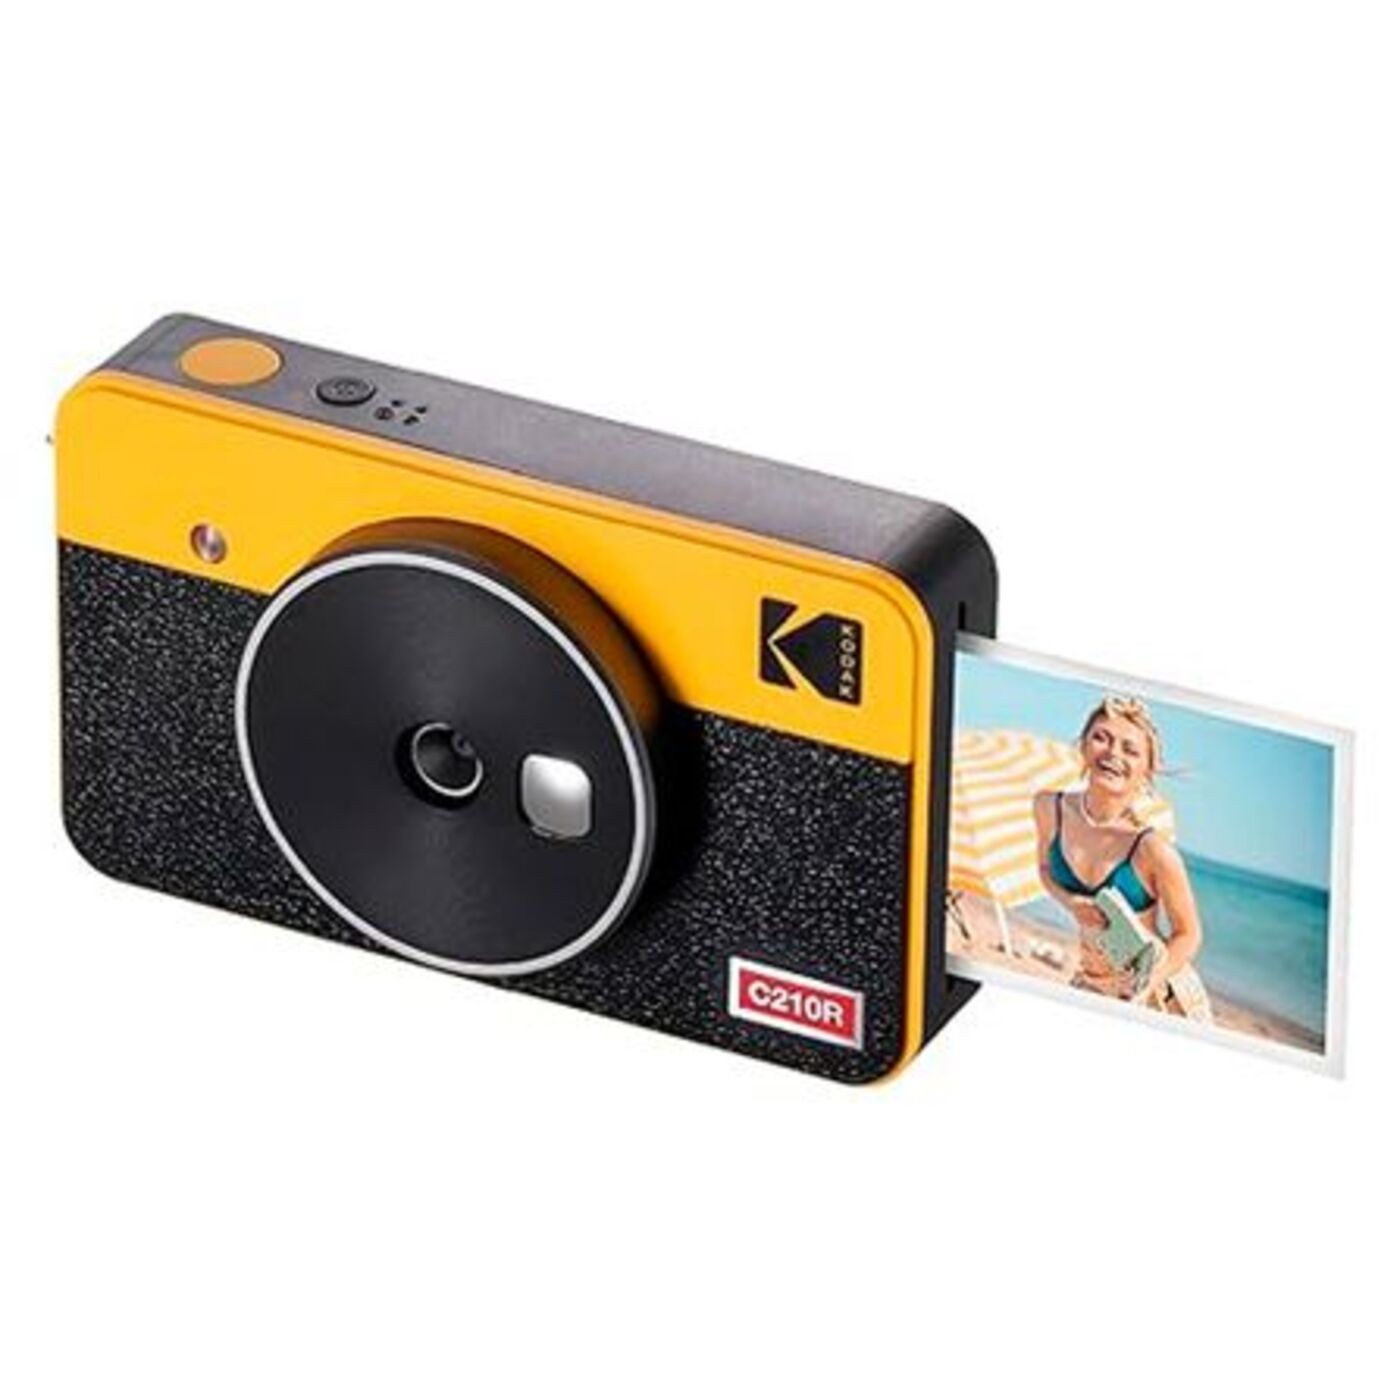 A Câmera e Impressora Instantânea Mini Shot 2 Retrô Kodak é o pesente ideal para a mãe que gosta de registrar momentos. A opção sai por cerca de R$ 1,2 mil — Foto: Fast Shop / Divulgação